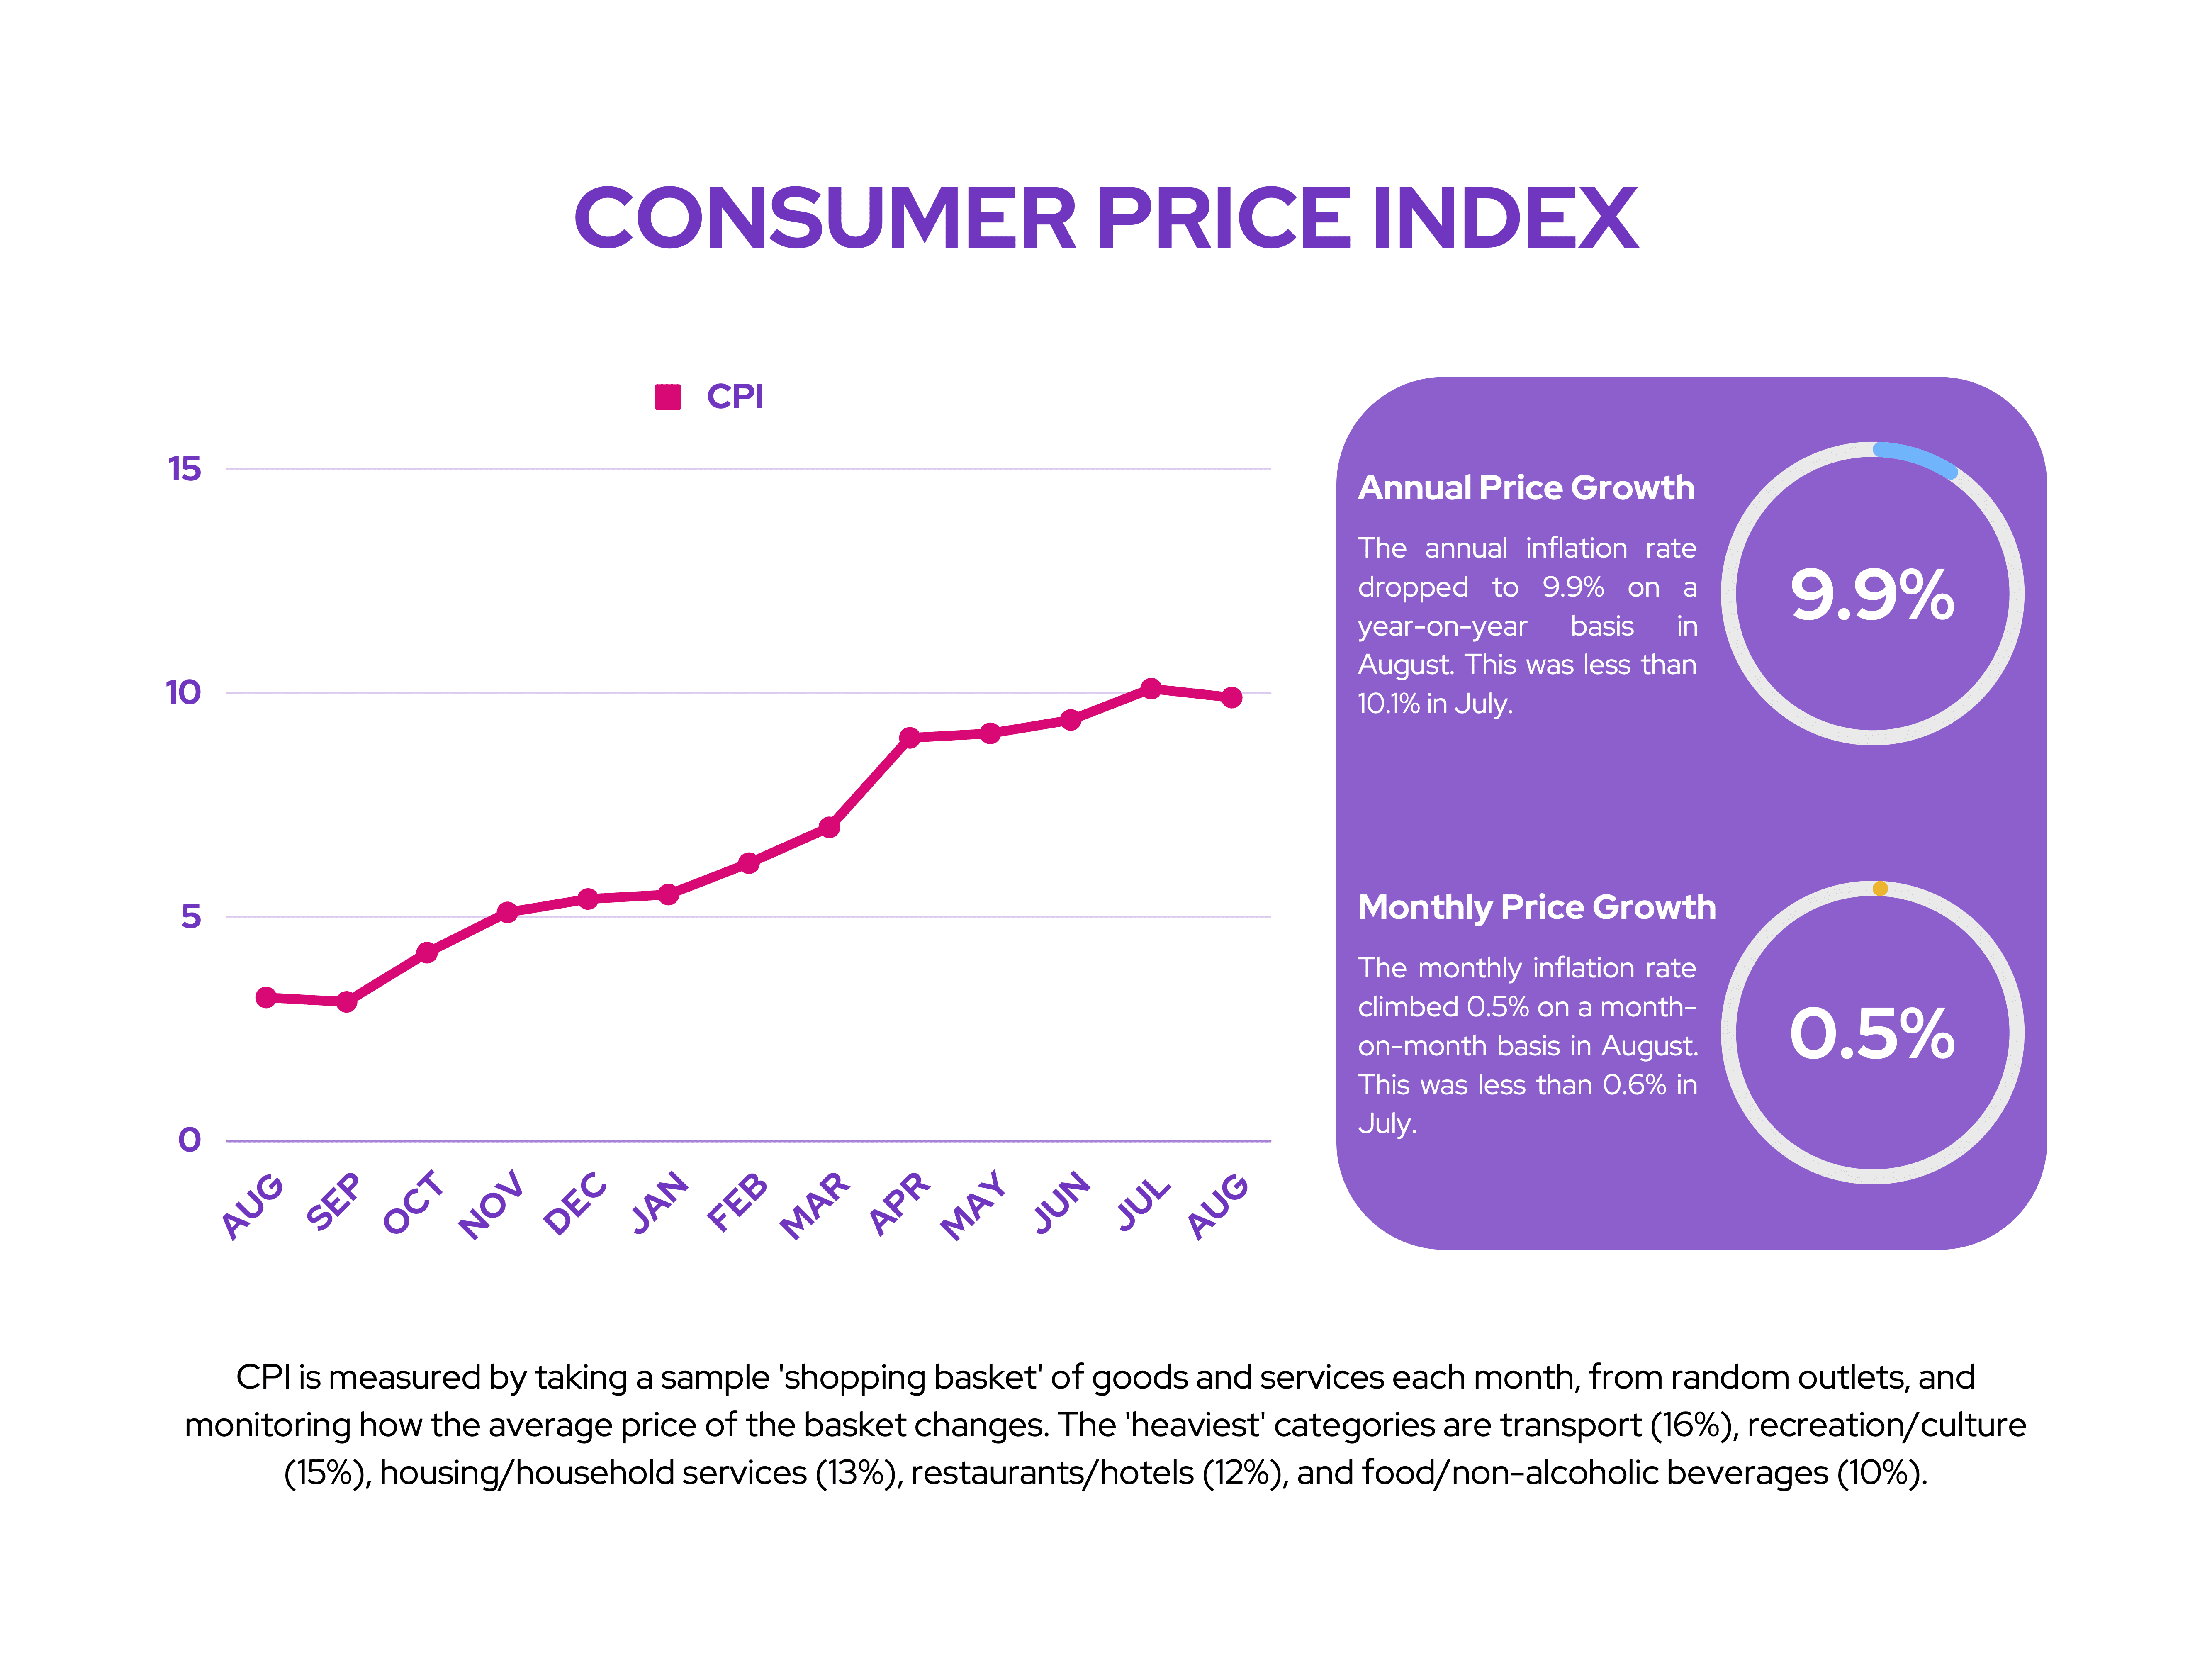 BT: Consumer Price Index